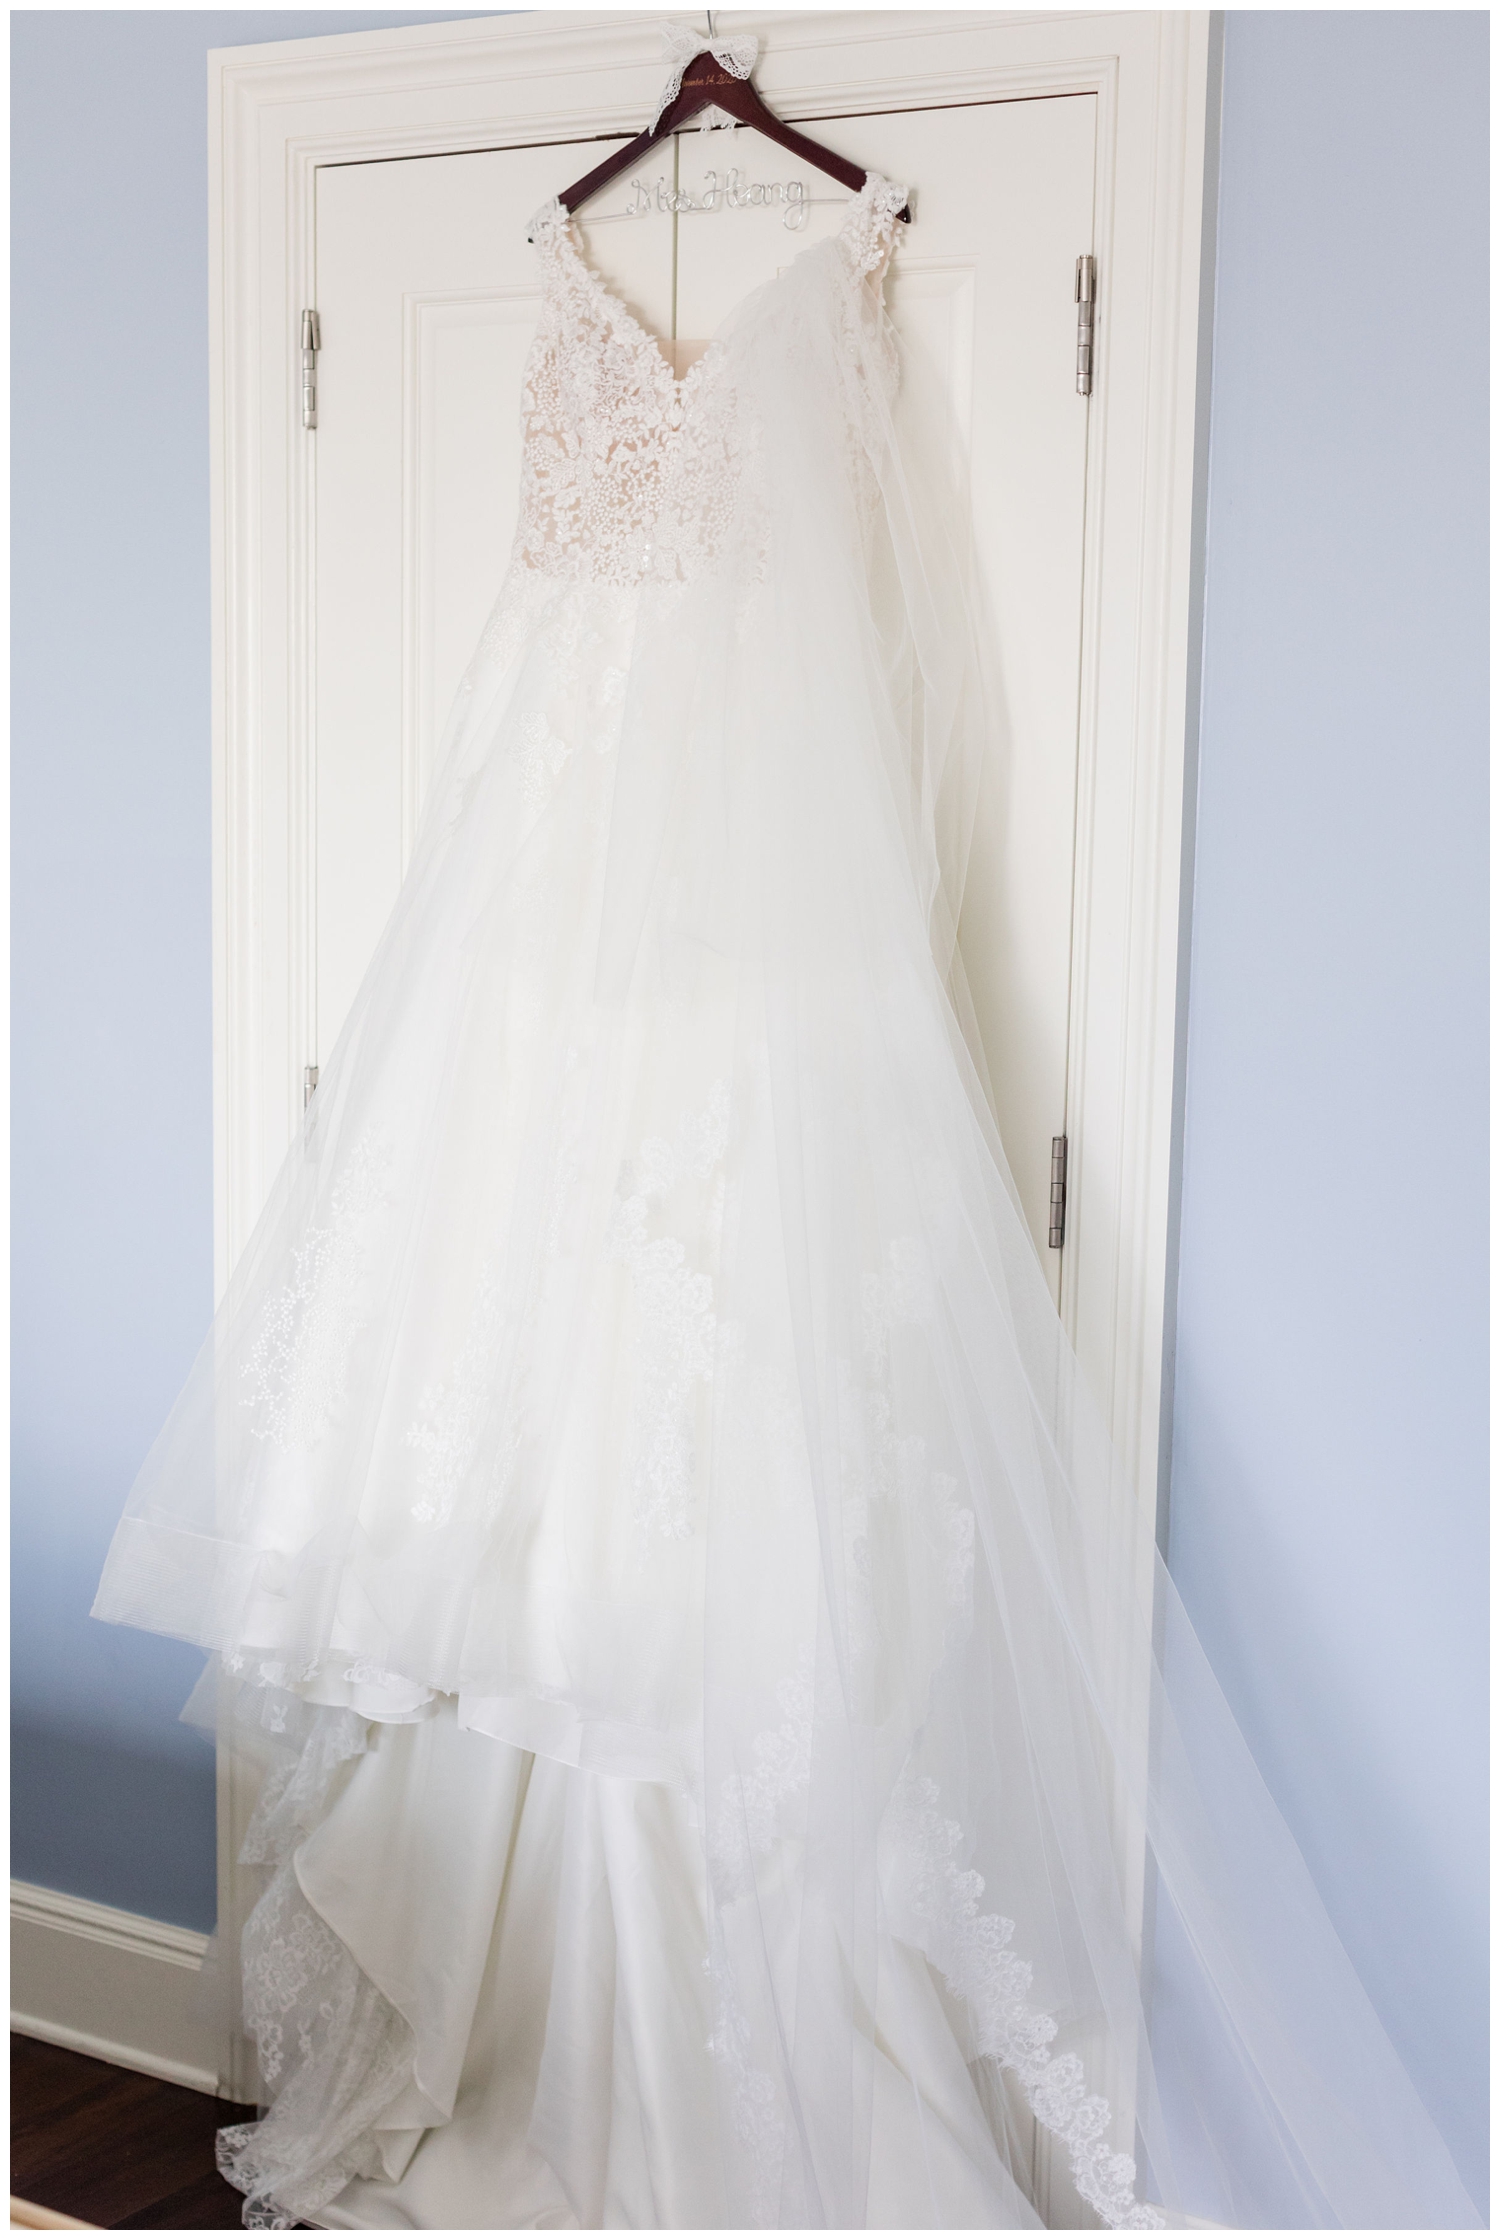 white wedding gown hanging on door